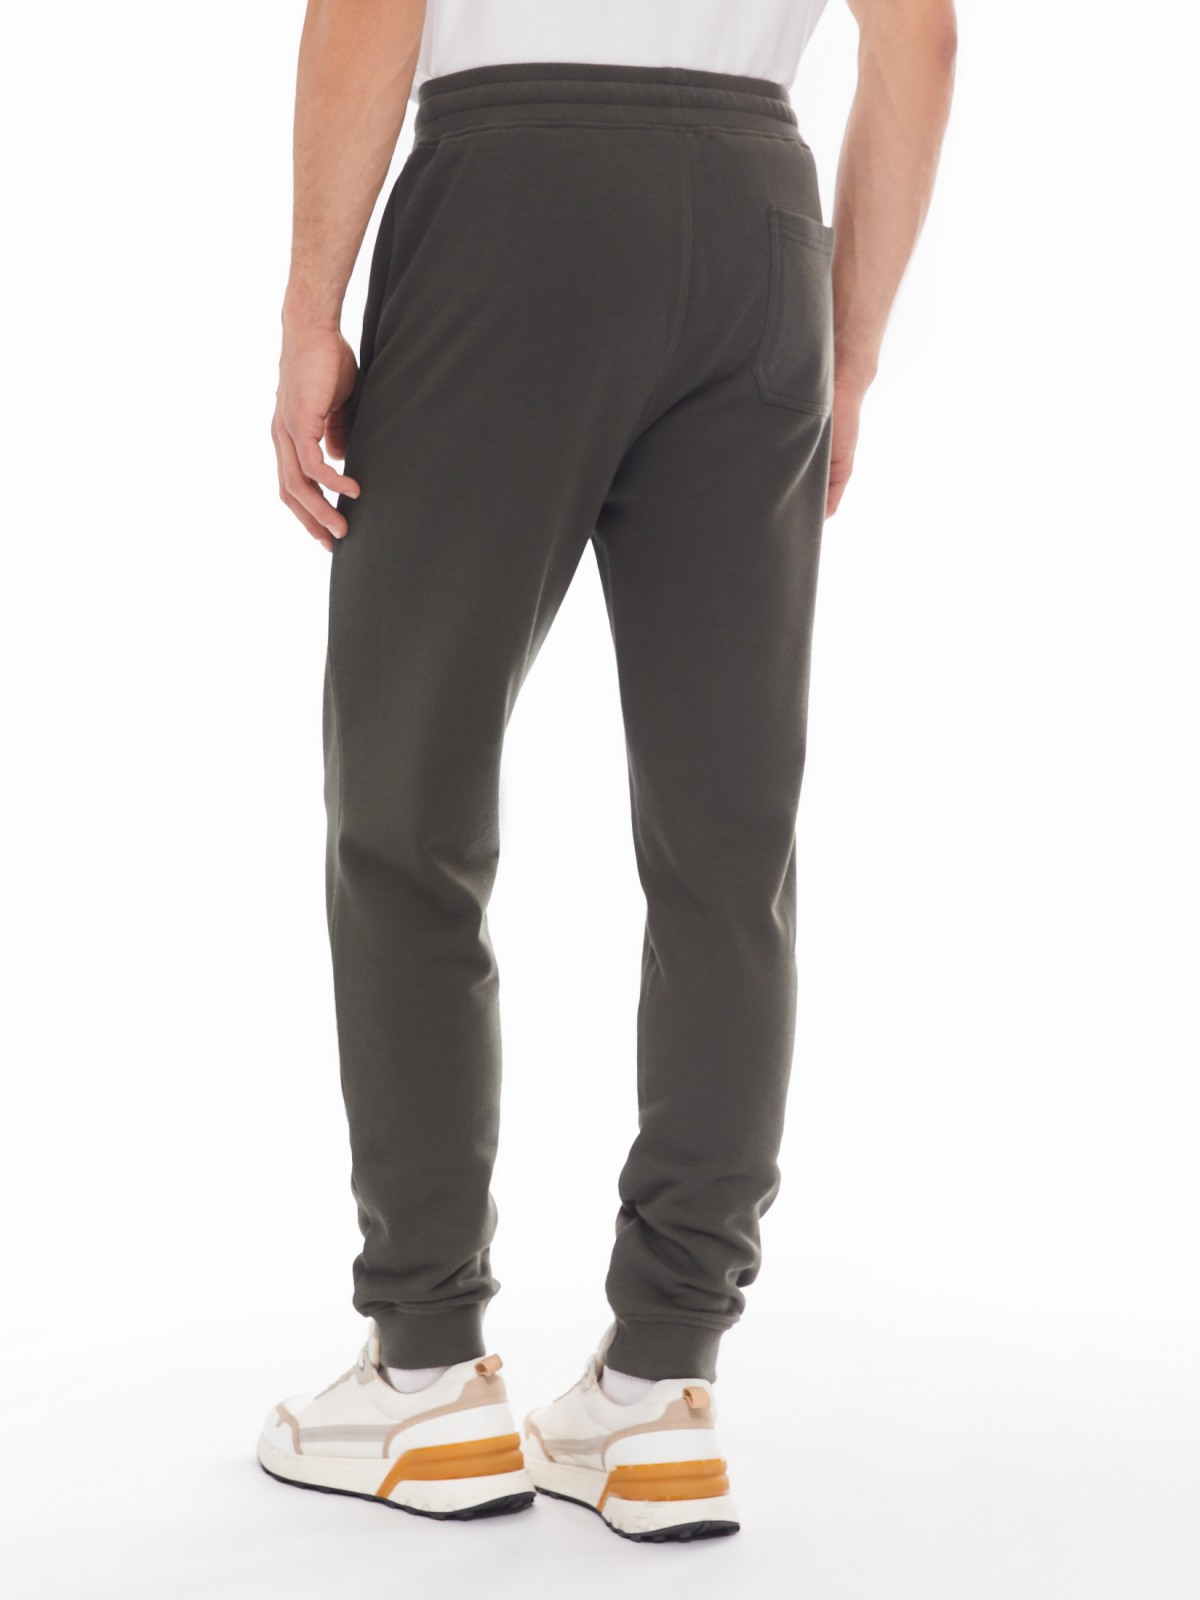 Трикотажные брюки-джоггеры в спортивном стиле zolla 014137675022, цвет хаки, размер M - фото 6